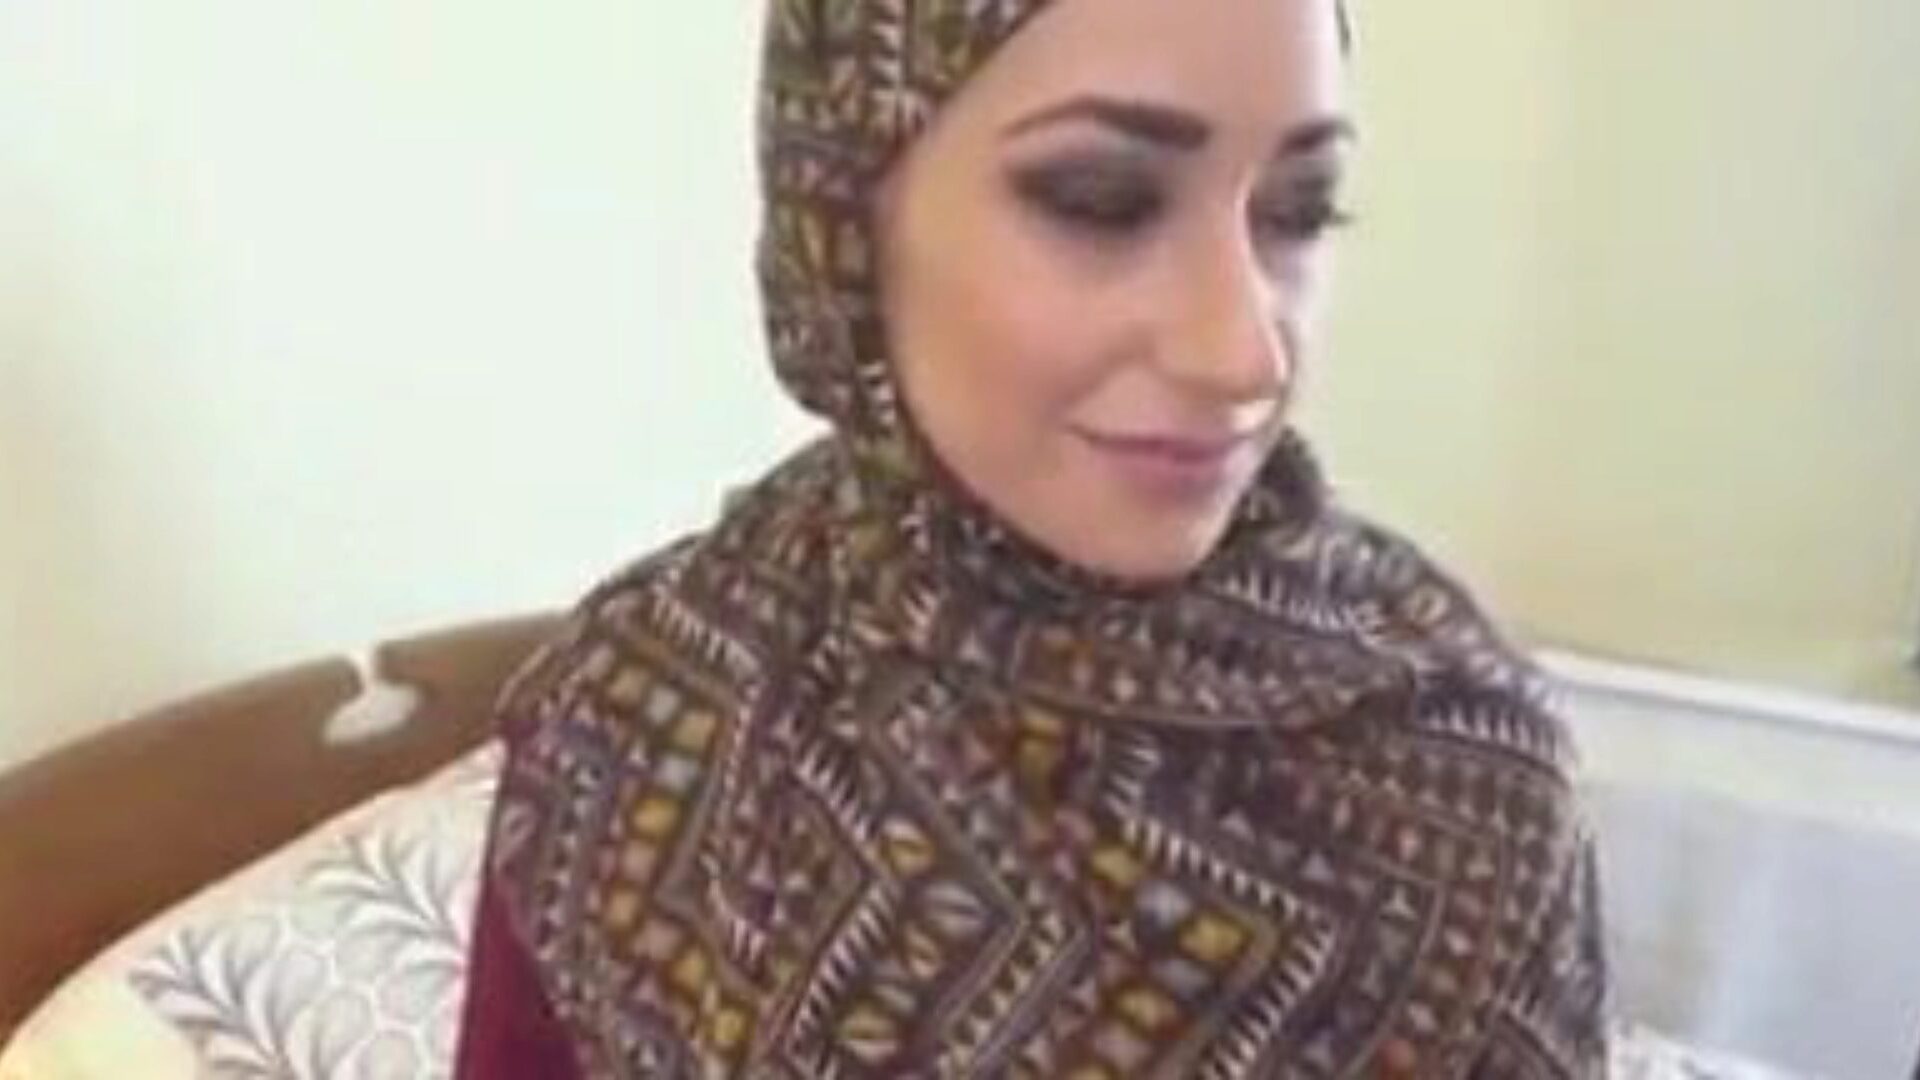 μουσουλμανικό hijab κορίτσι γαμημένο, δωρεάν μουσουλμανικό σωλήνα πορνό βίντεο cd παρακολουθήστε μουσουλμανικό hijab κορίτσι γαμημένο κλιπ στο xhamster, το μεγαλύτερο ιστότοπο fuckfest tube με τόνους δωρεάν αραβικό μουσουλμανικό σωλήνα & youtube hijab πορνό κλιπ